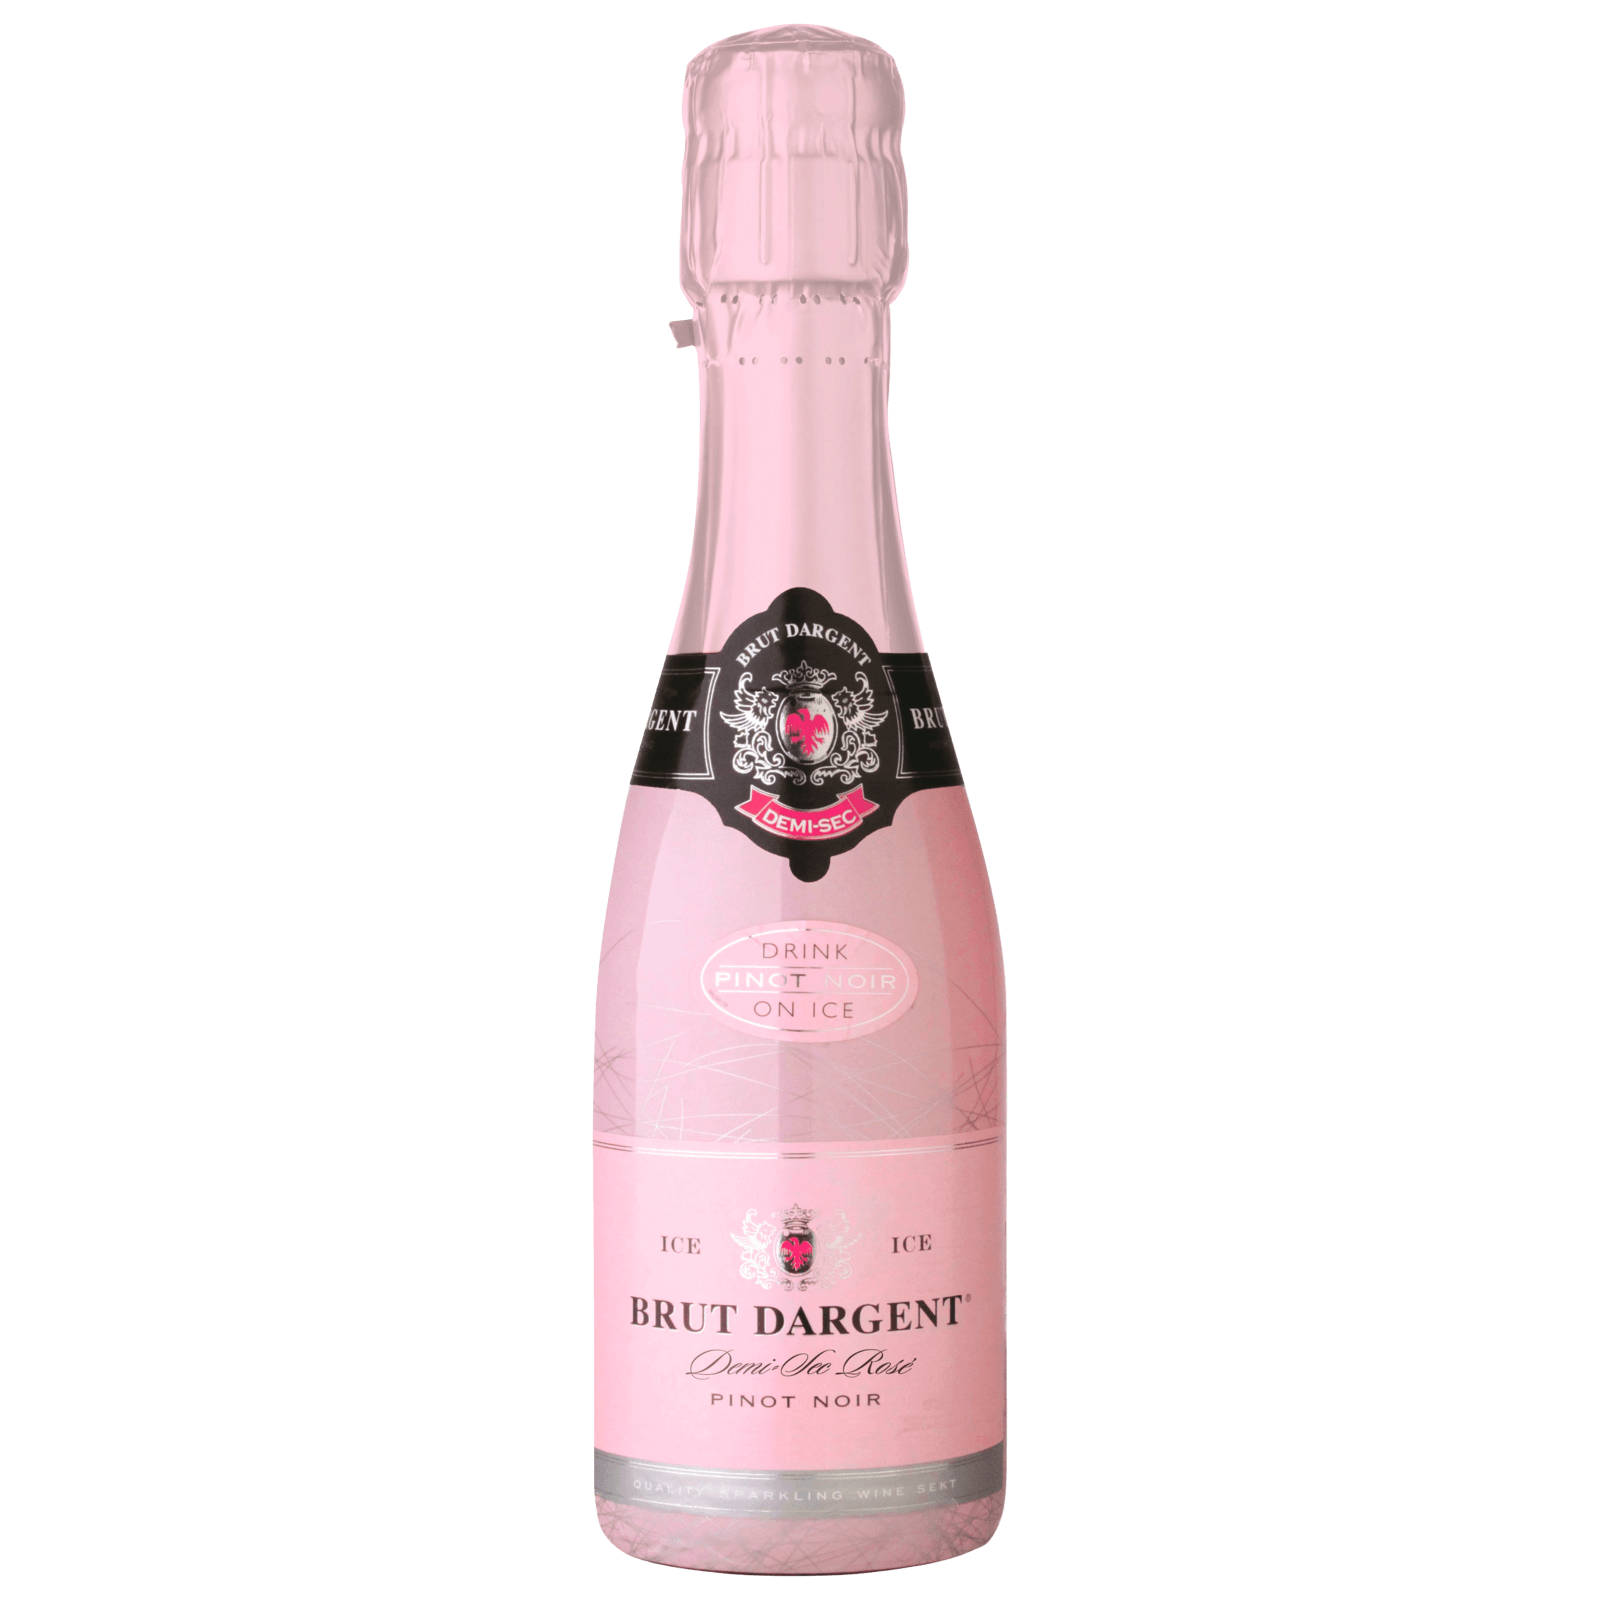 Brut Dargent Pinot Noir Sekt Rosé 0,2l bei REWE online bestellen! | Champagner & Sekt